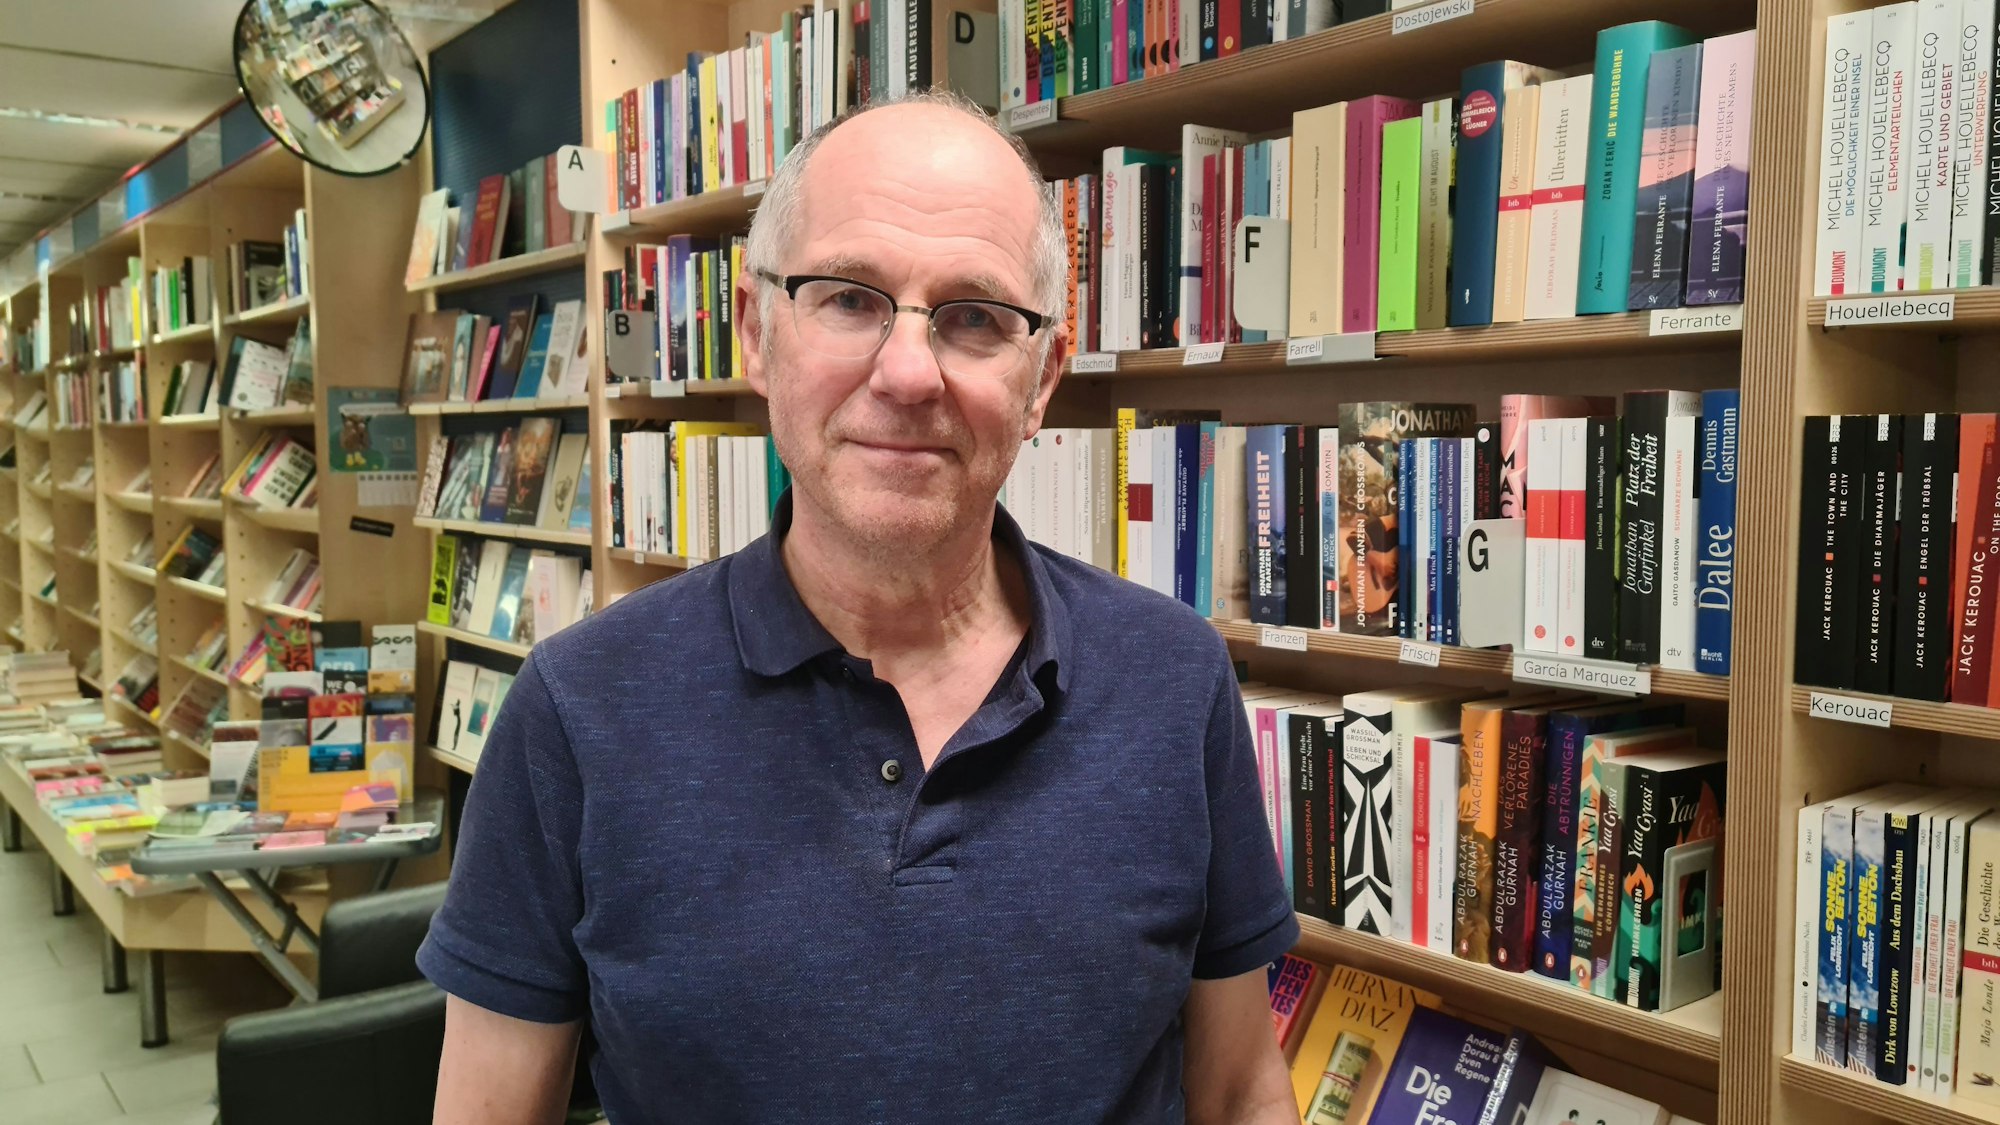 Ein Mann mit grauem Haar und Brille steht vor einem Bücherregal.